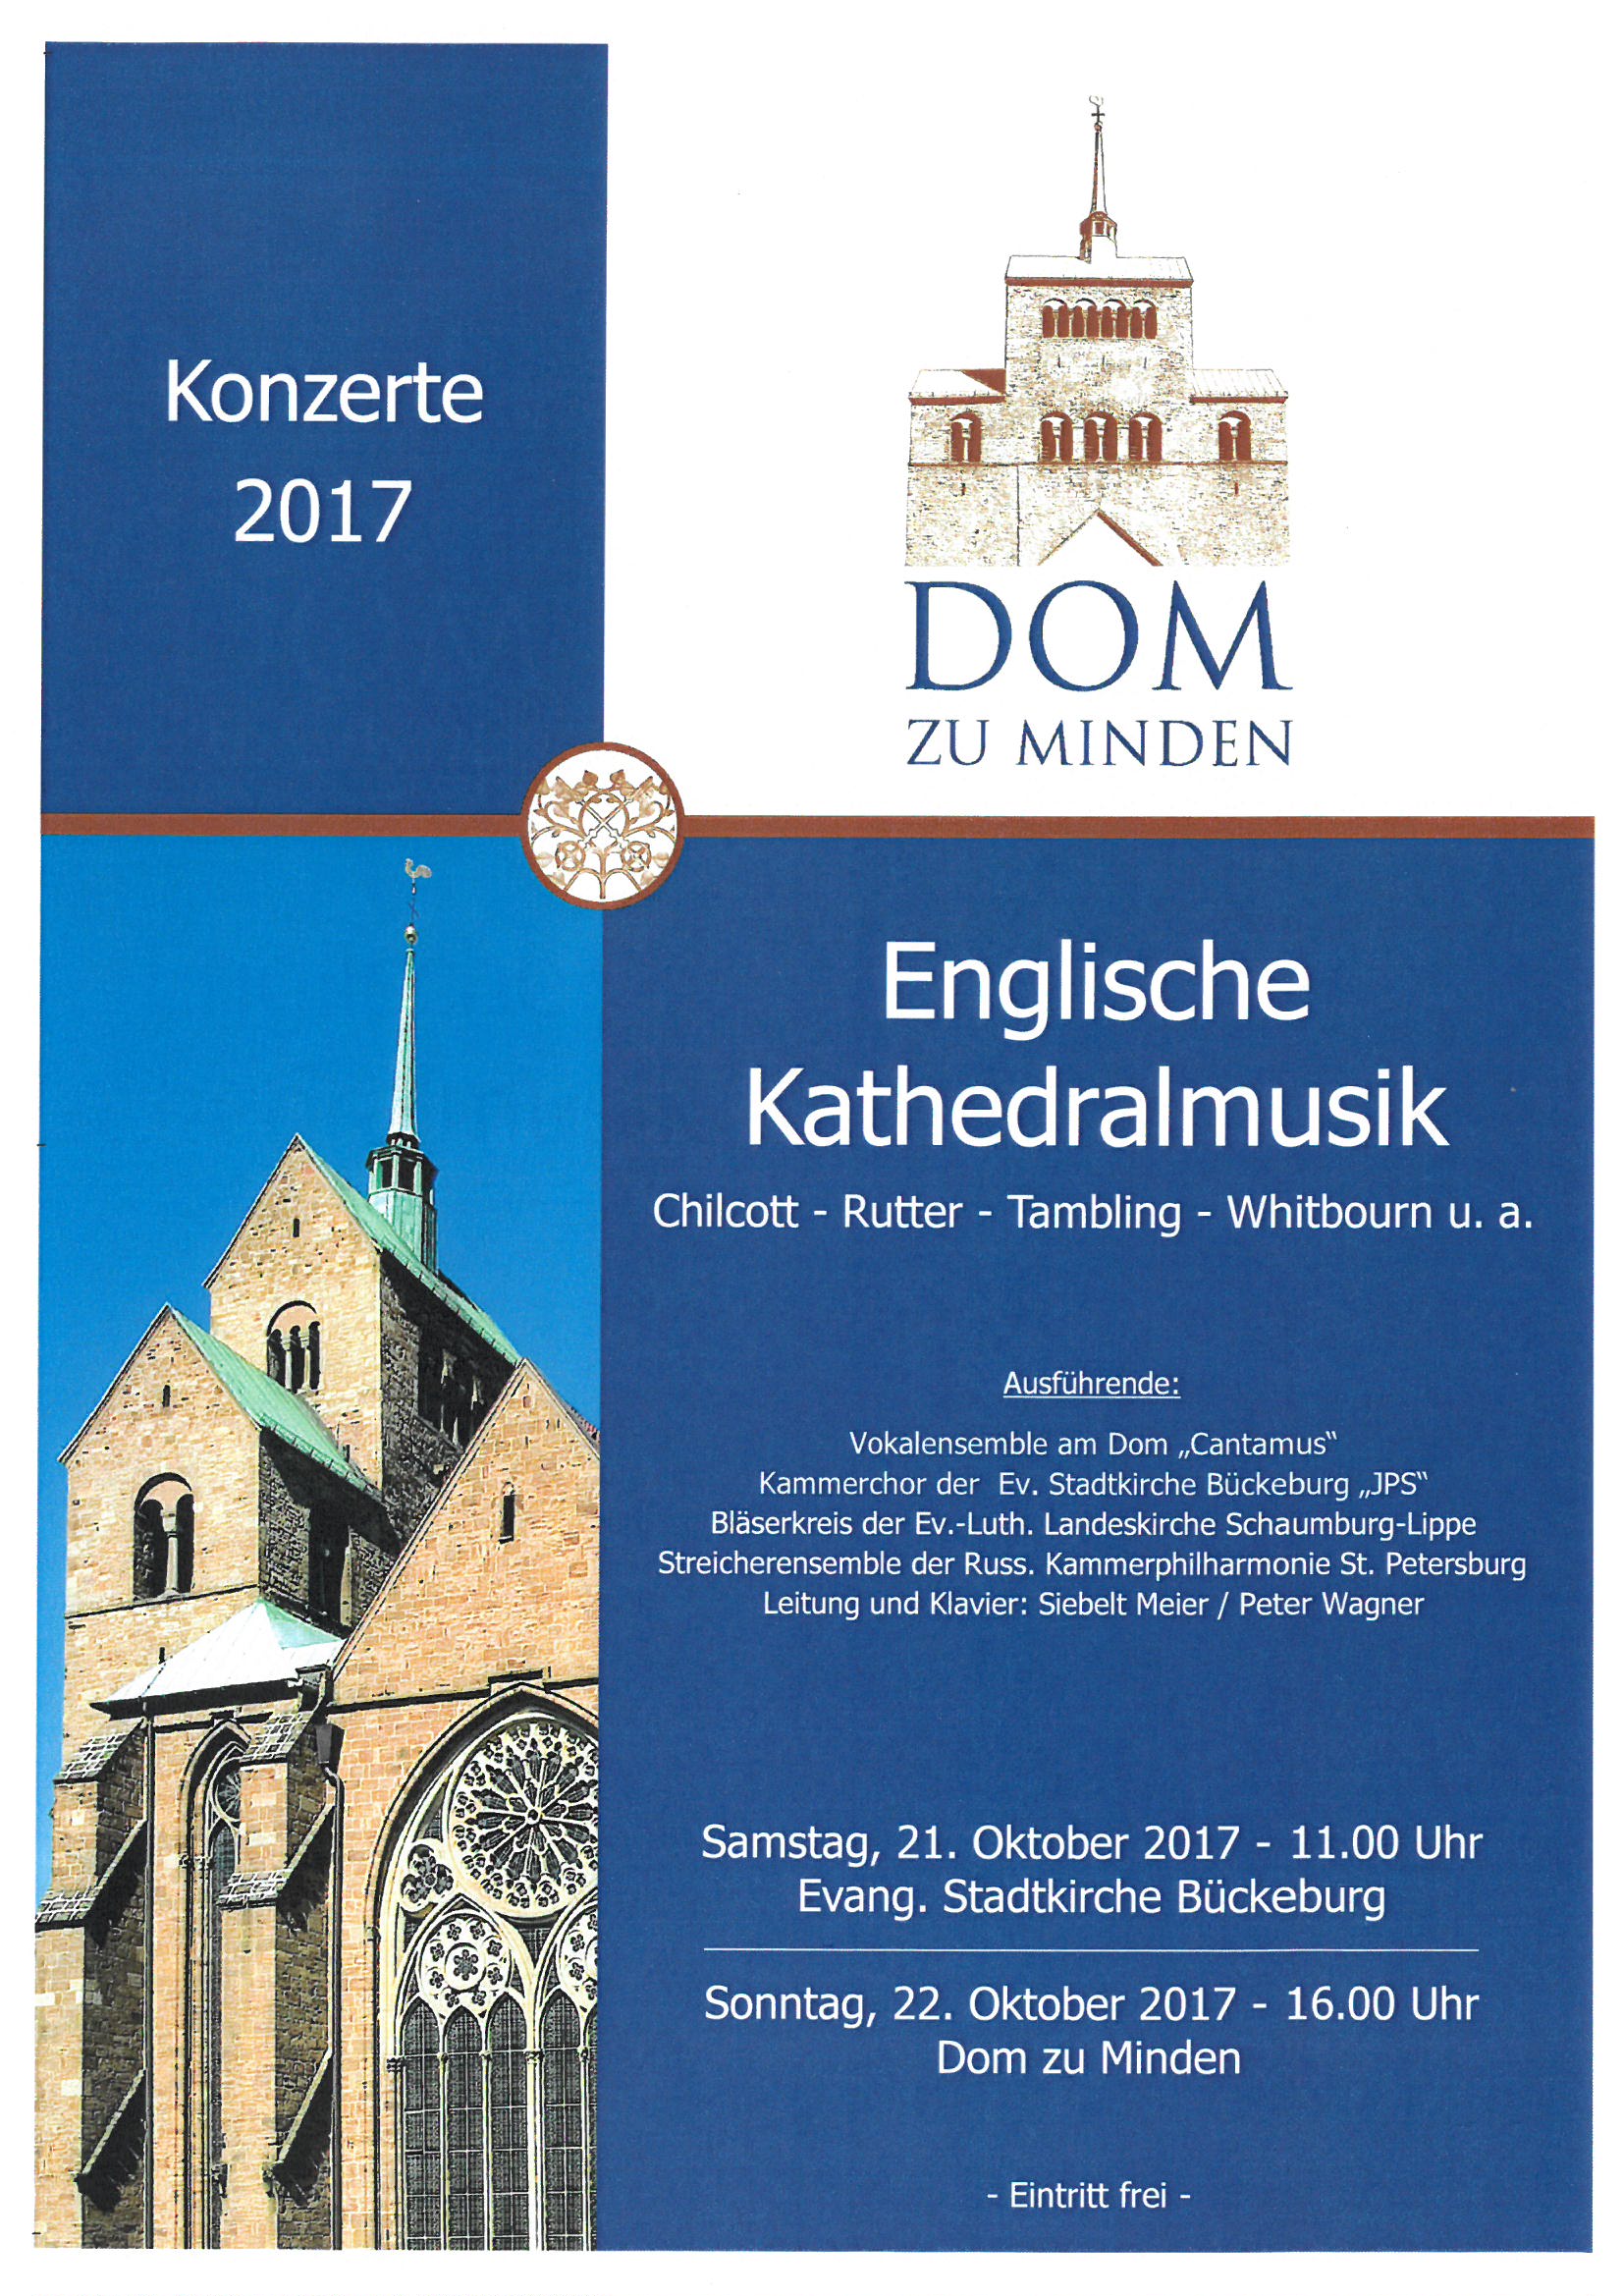 Englische Kathedralmusik am 22. Oktober 2017 um 16.00 Uhr